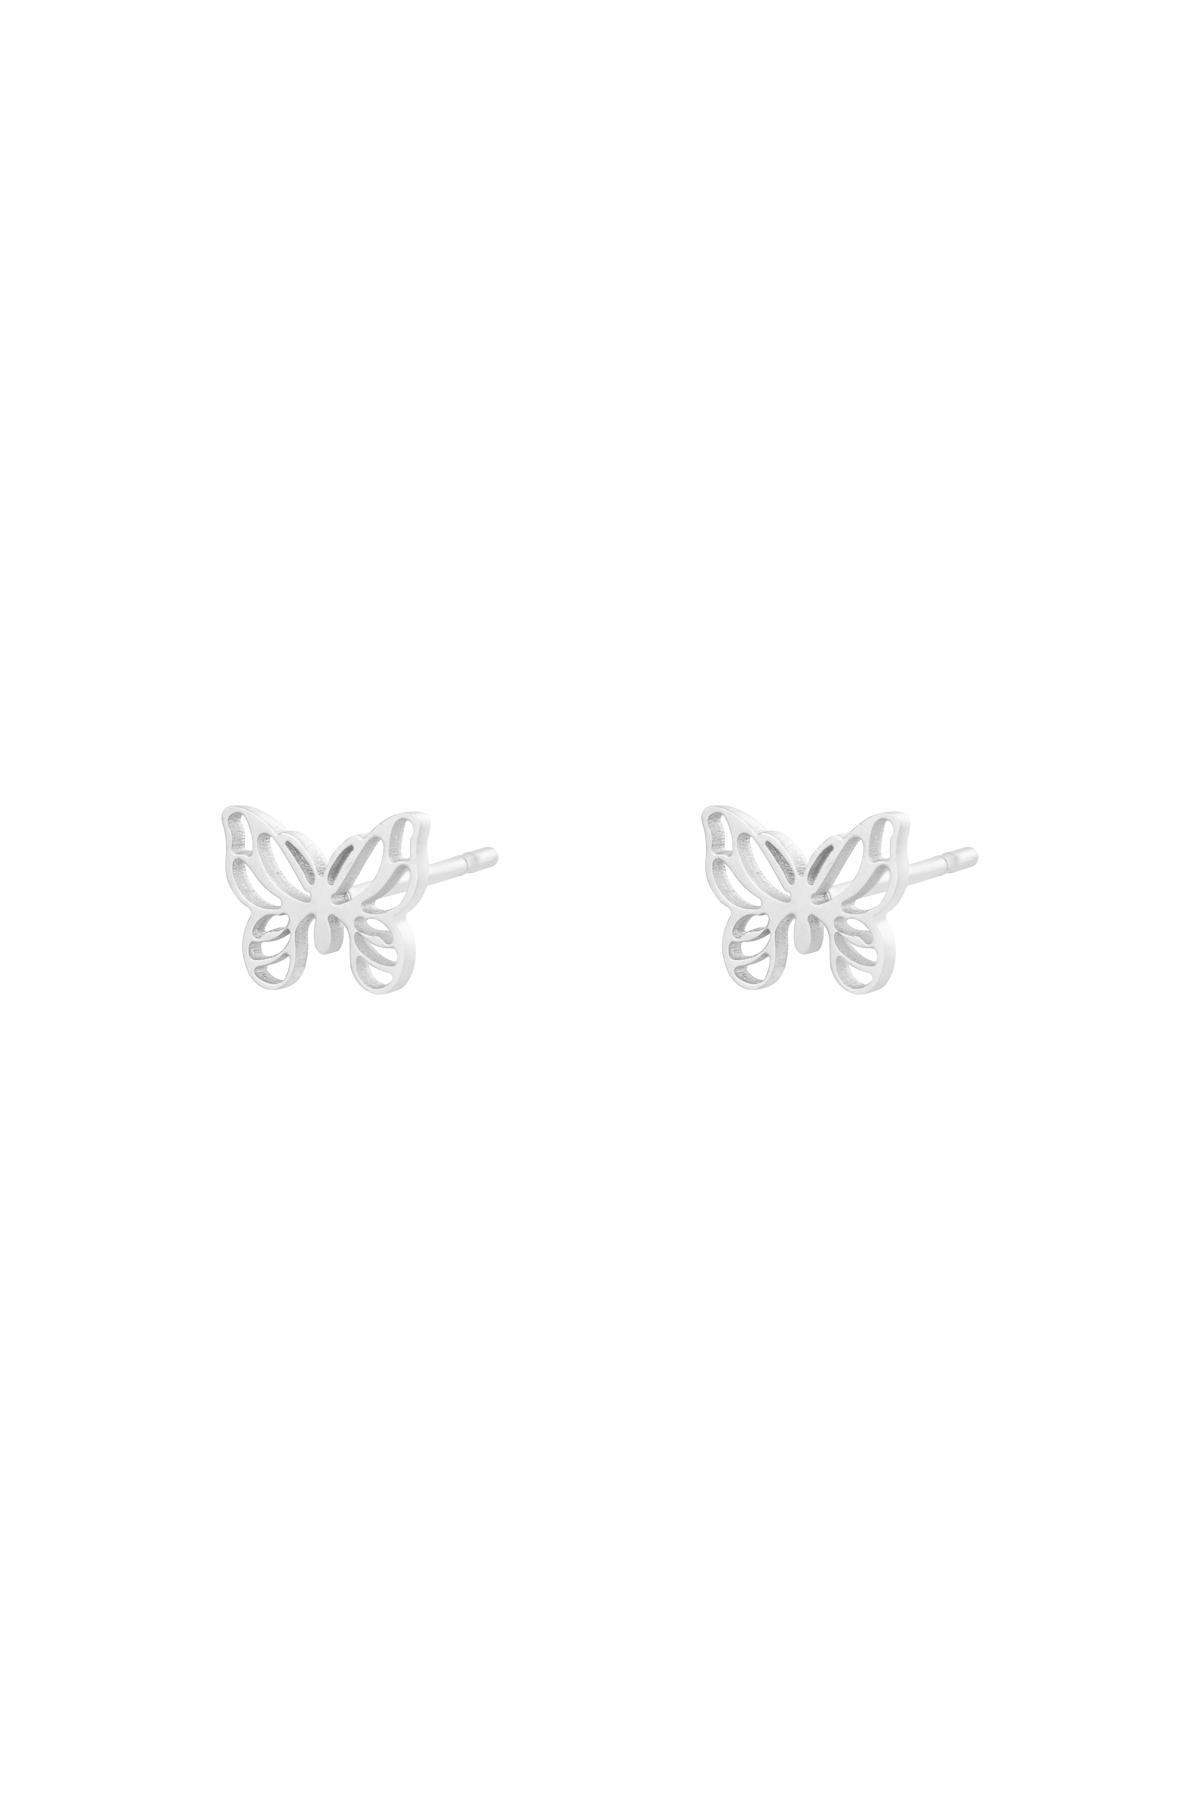 Earrings Little Butterfly Silver Stainless Steel